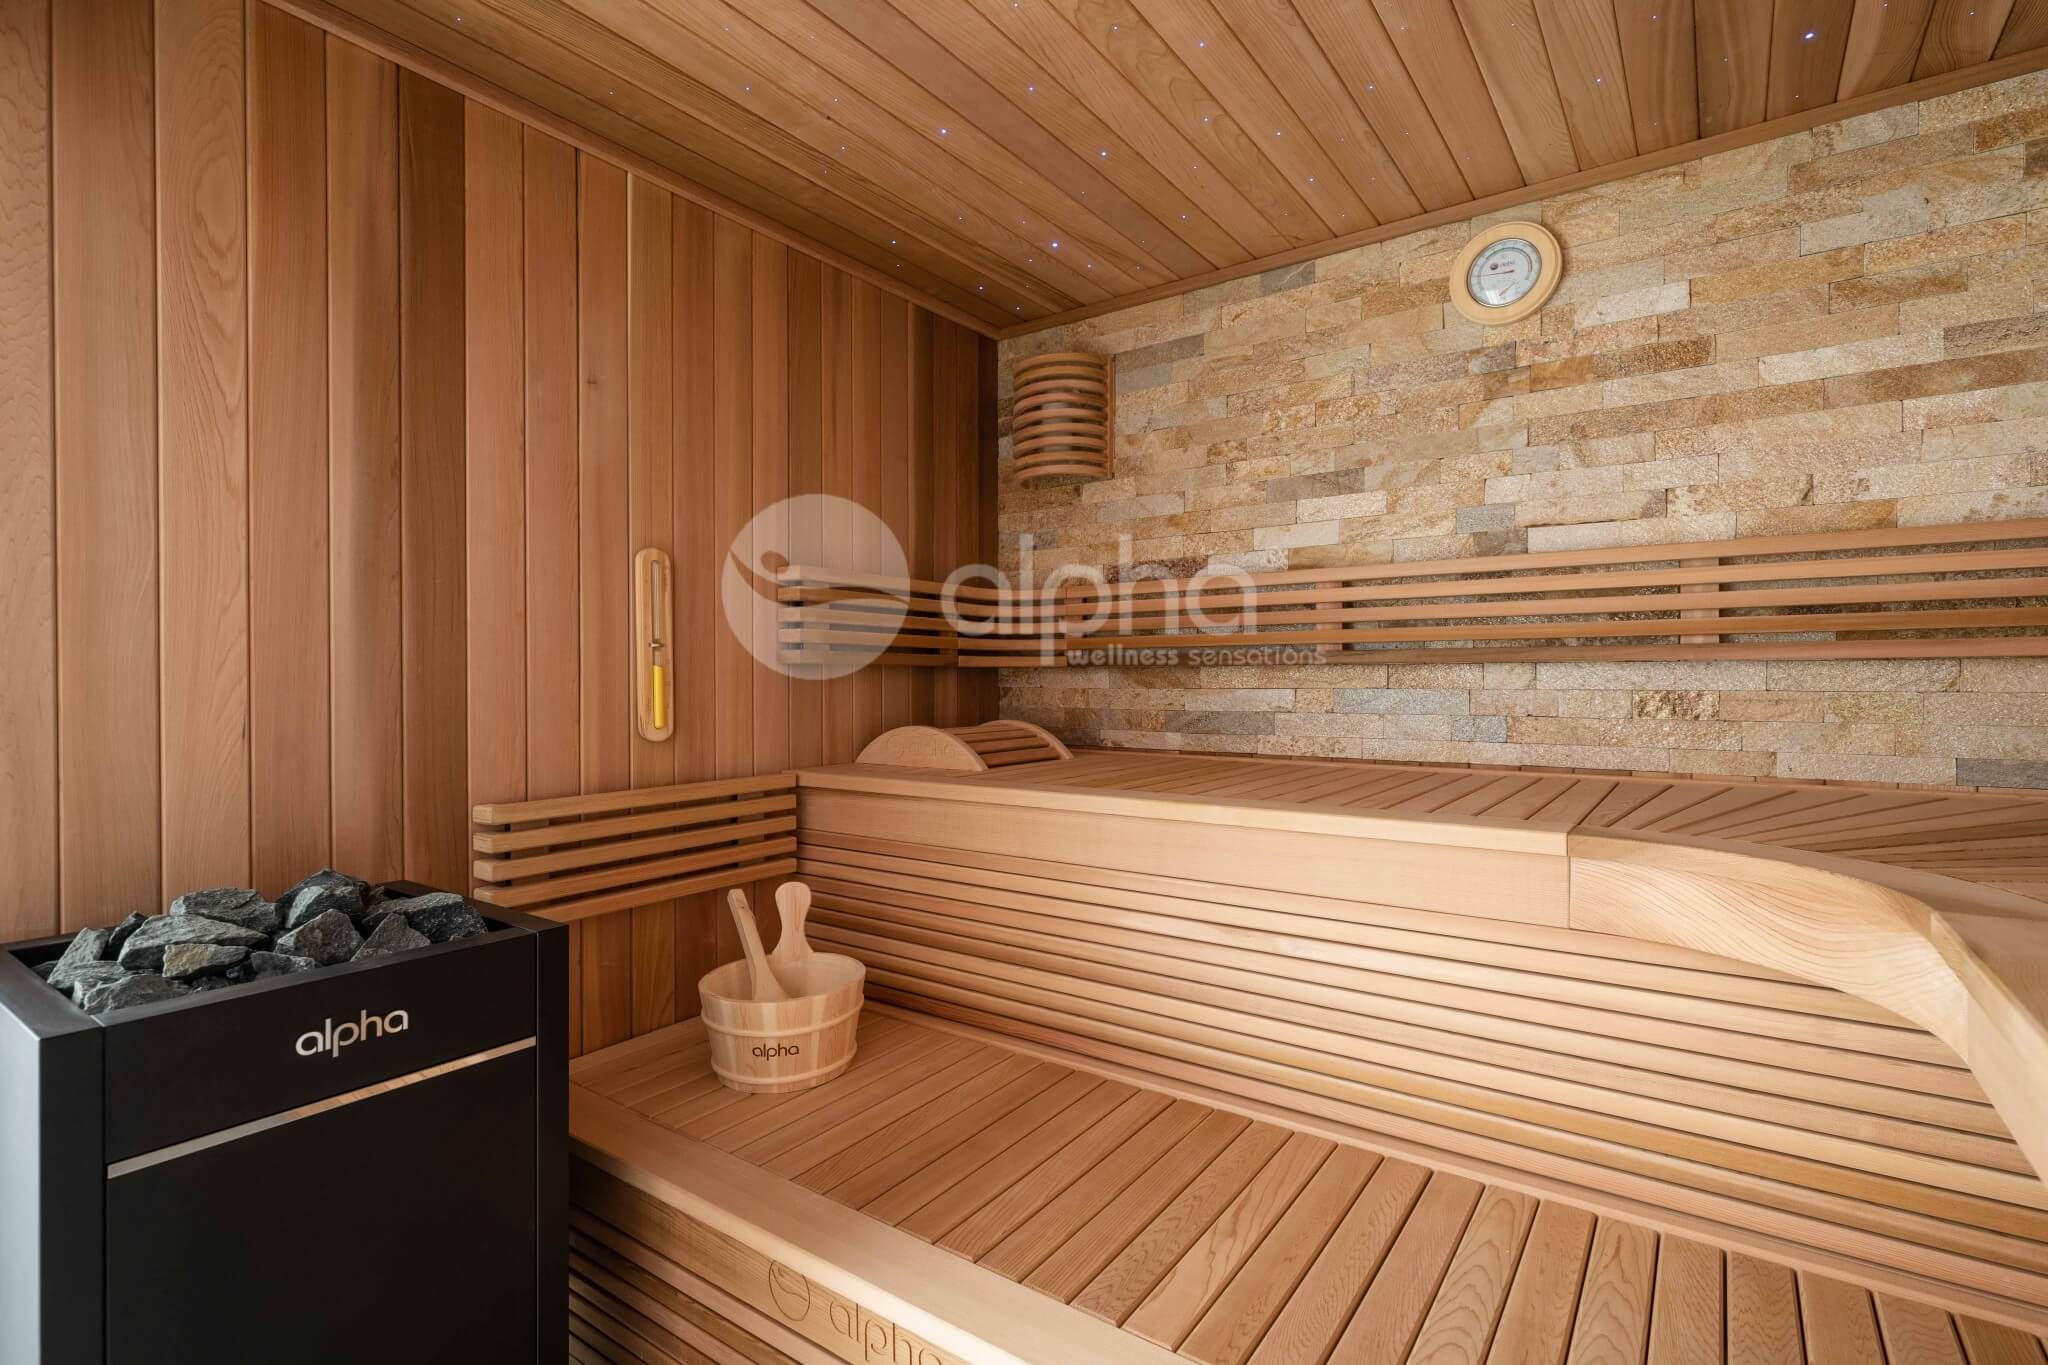 Portection thermique 1 côté pour poêle à bois dans un sauna